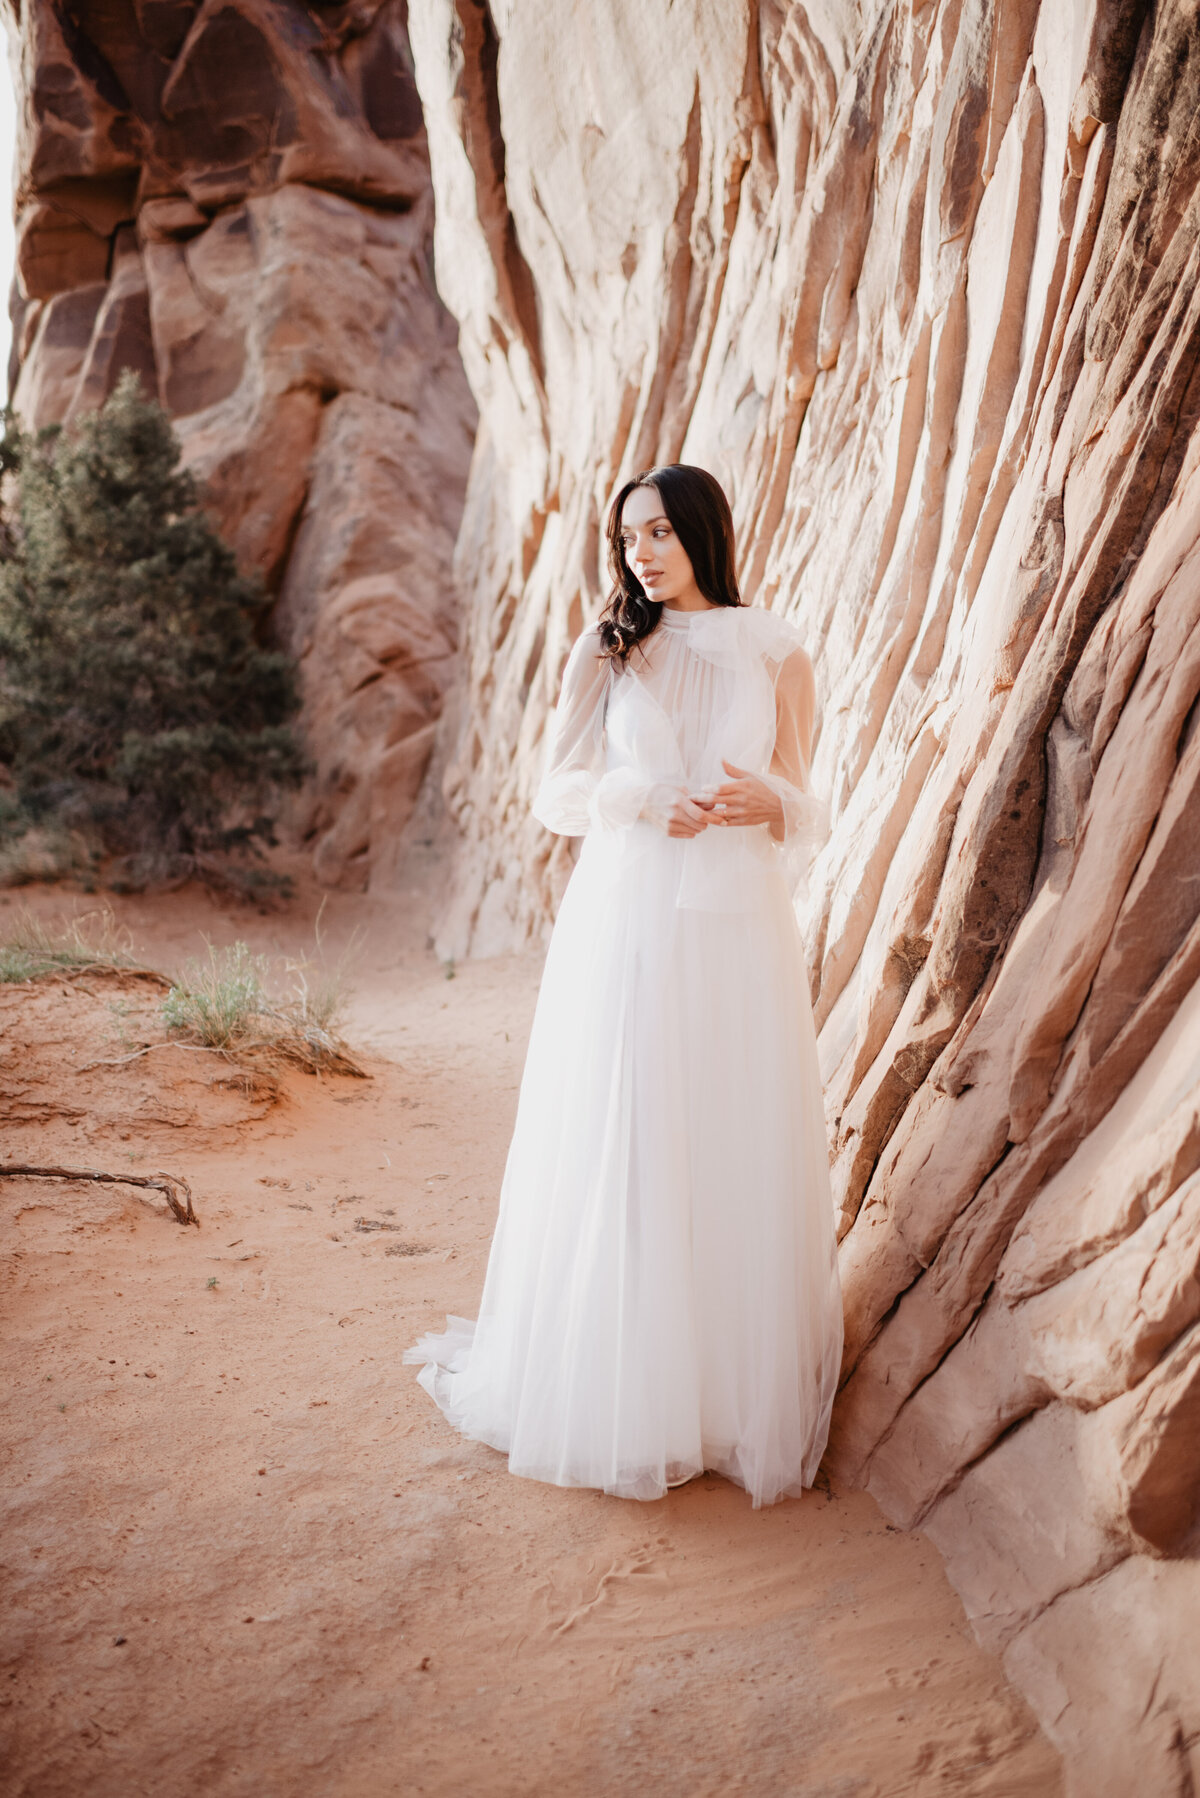 Utah elopement photographer captures bride wearing long sleeve gown